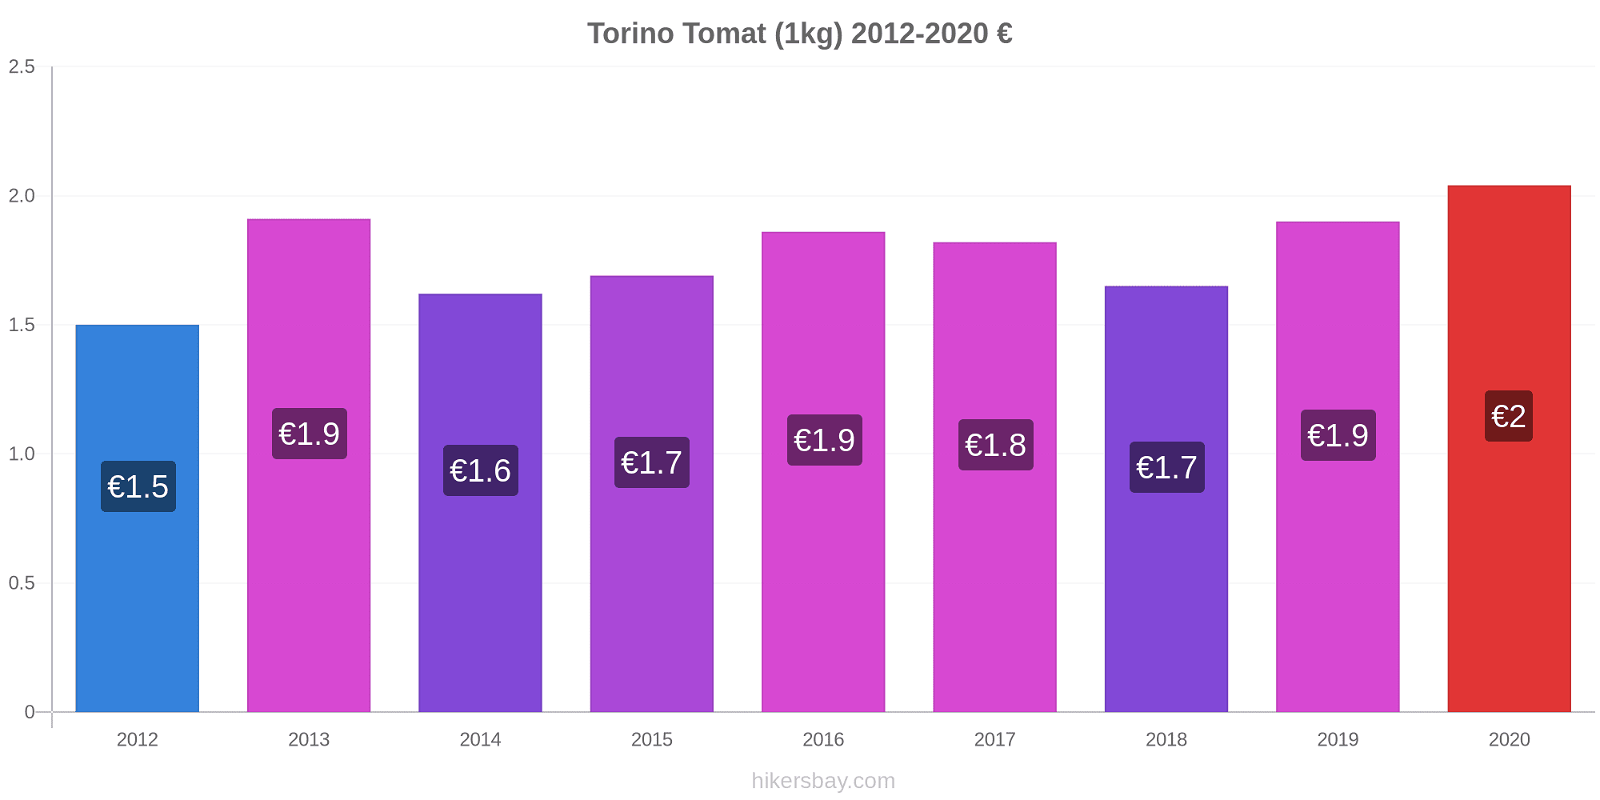 Torino perubahan harga Tomat (1kg) hikersbay.com